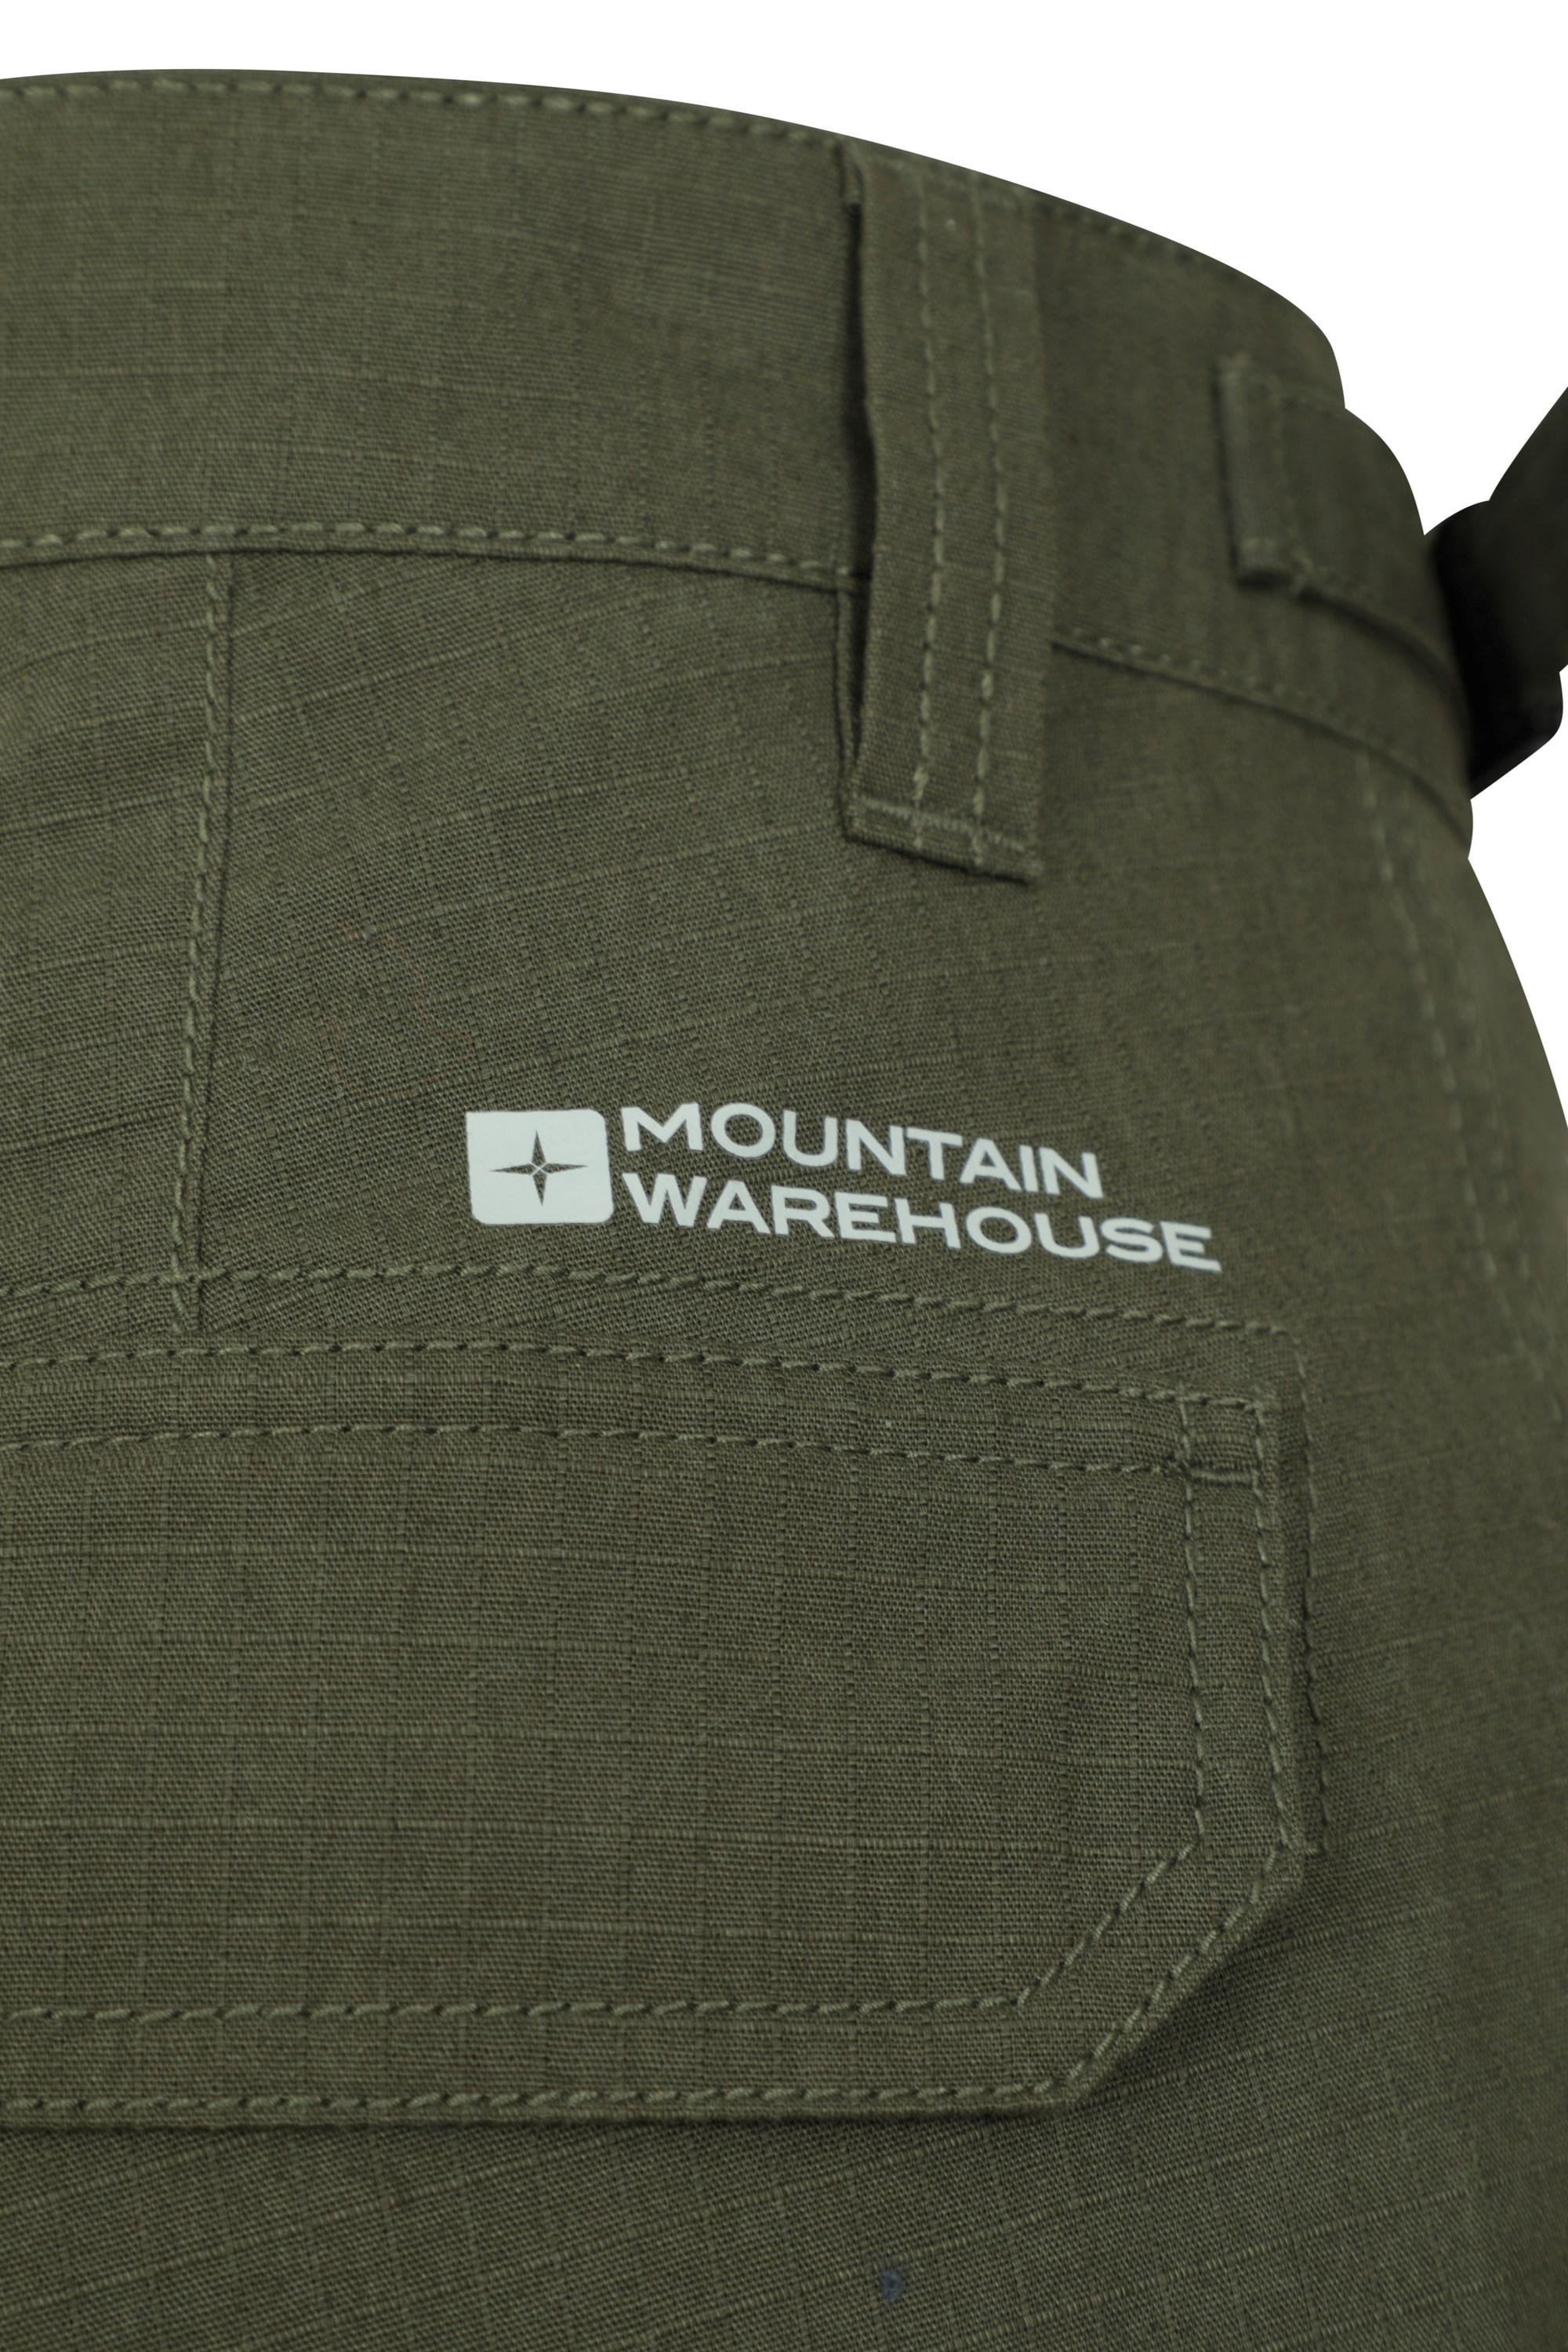 Mountain Warehouse Mens Camo Cargo Shorts - Brown | Size W38